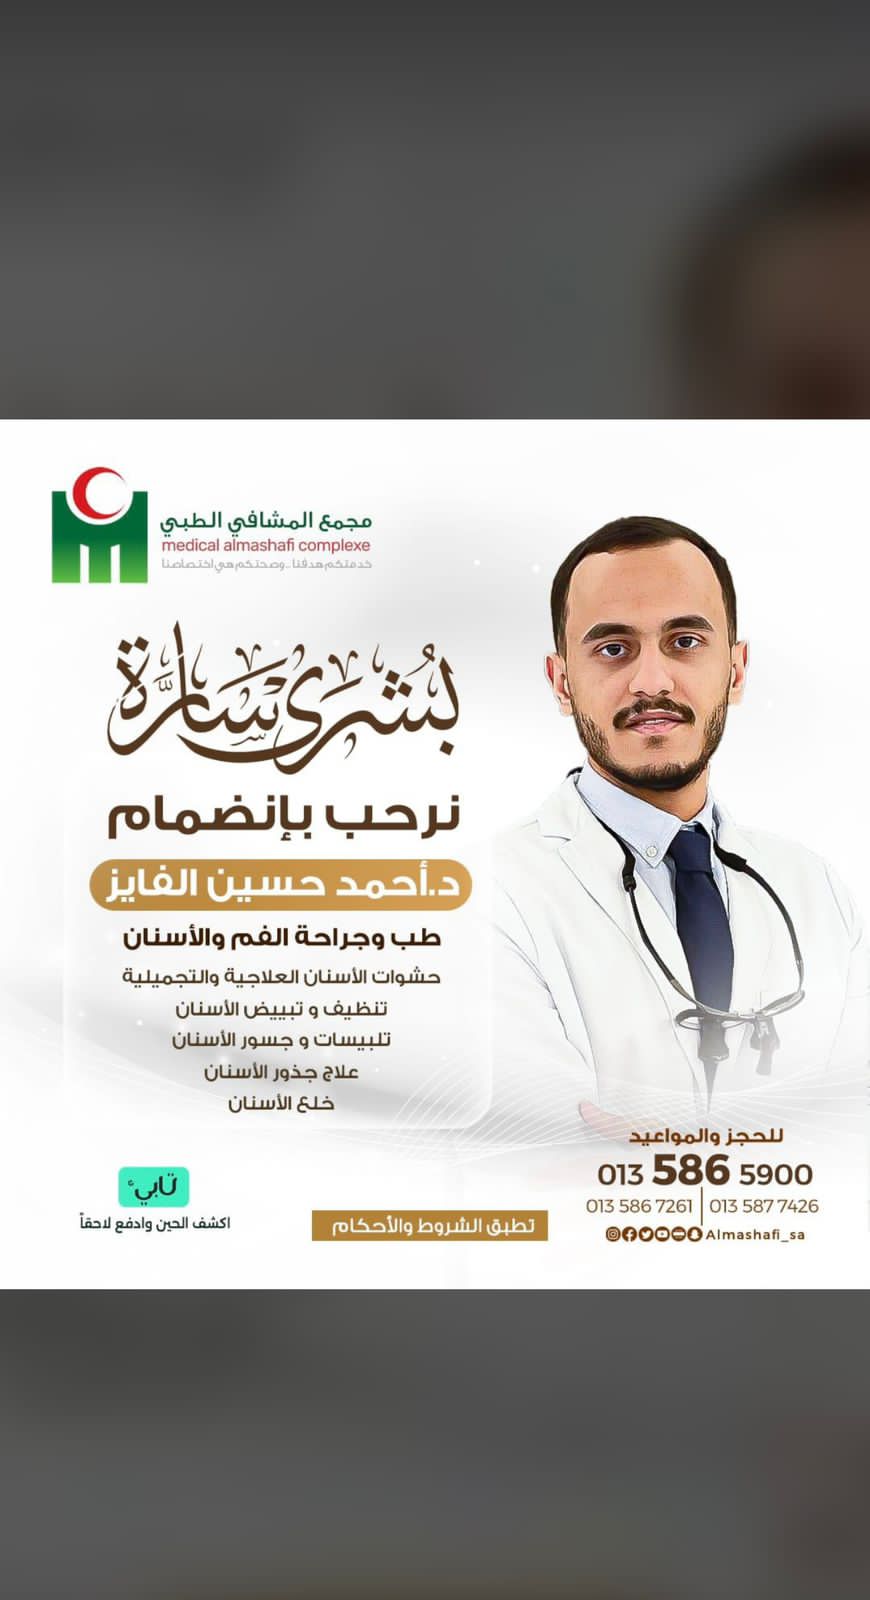 مجمع المشافي الطبي بالاحساء يرحب بإنضمام الدكتور أحمد حسين الفايز